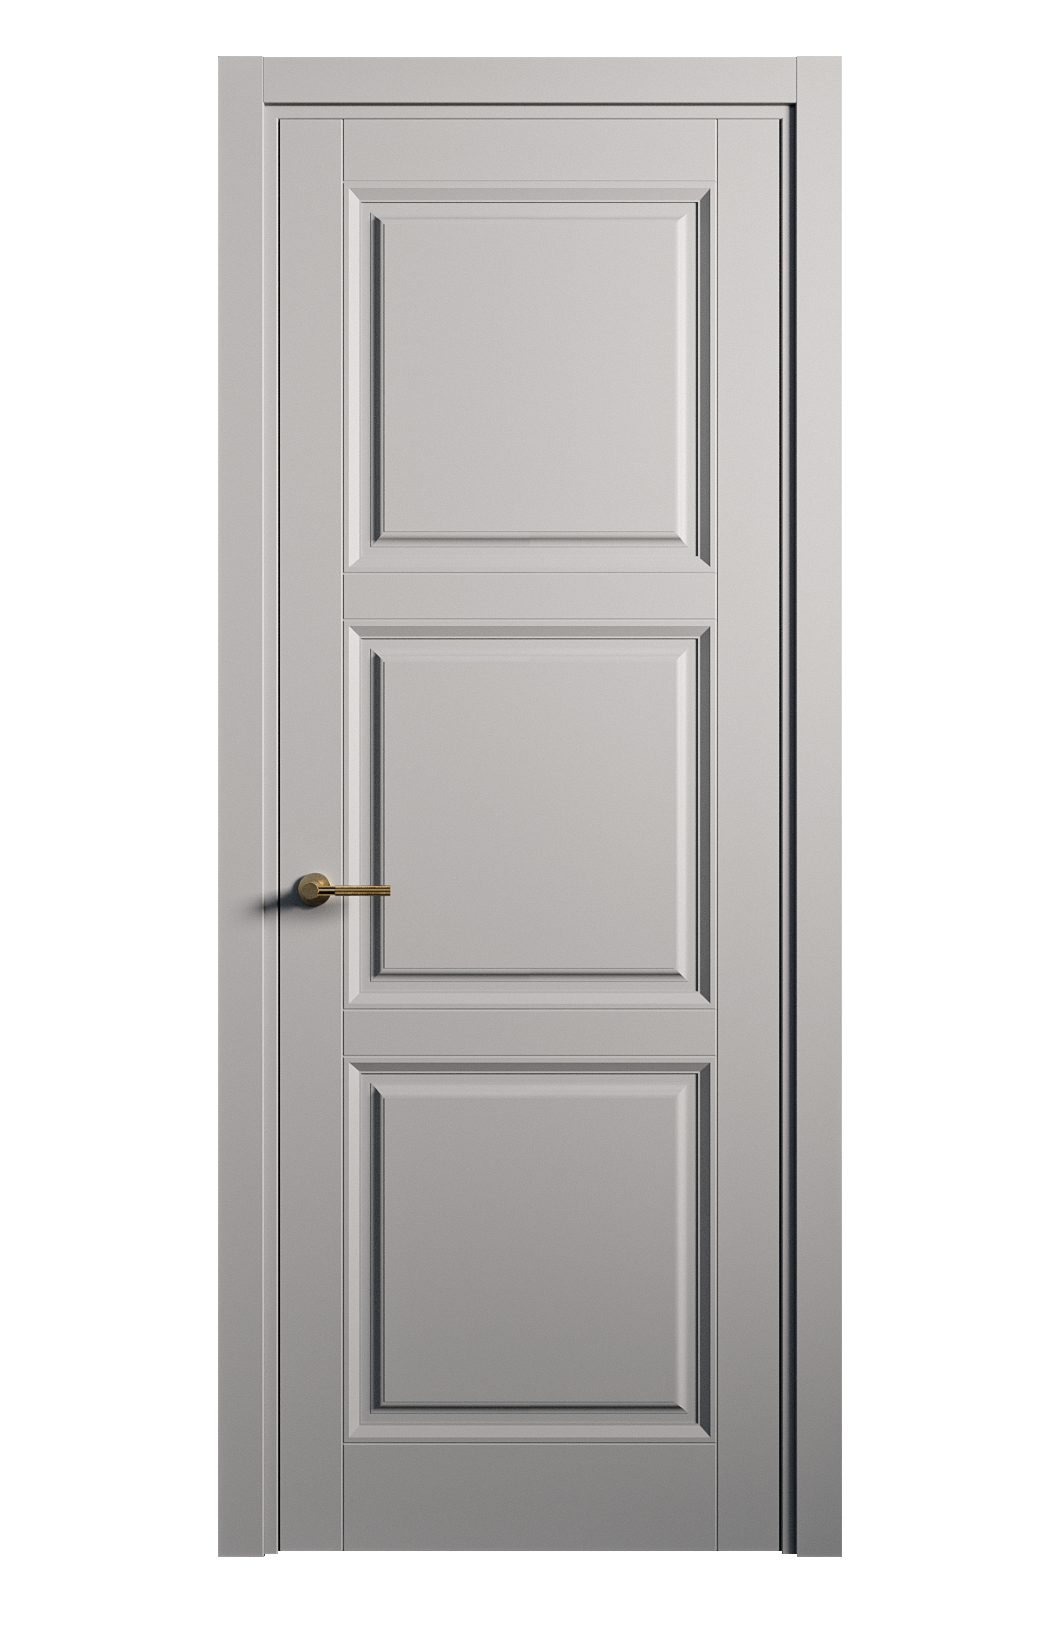 Межкомнатная дверь Venezia-3 глухая эмаль ral 7040 25772